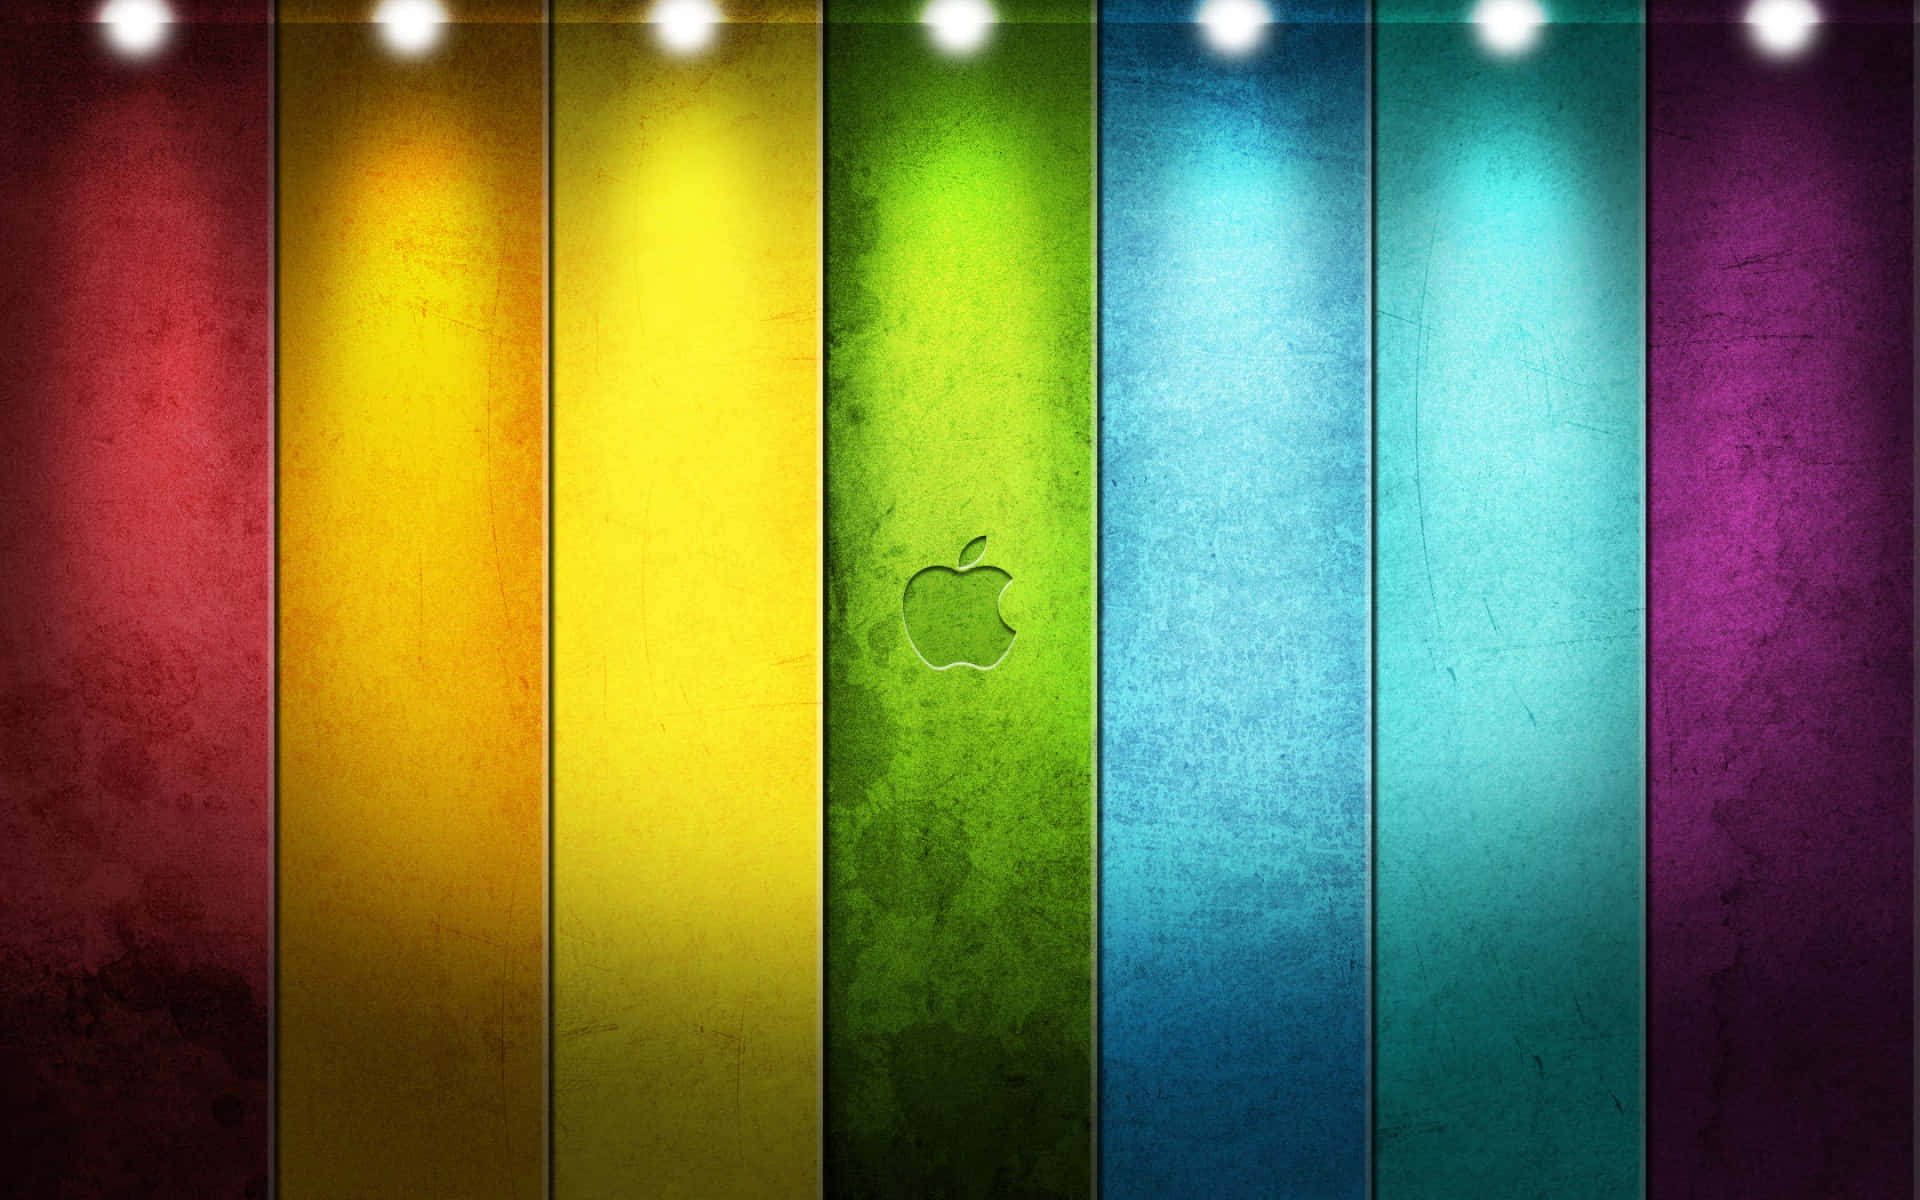 Apfelhintergrundbilder - Hintergrundbilder Für Das Iphone Wallpaper